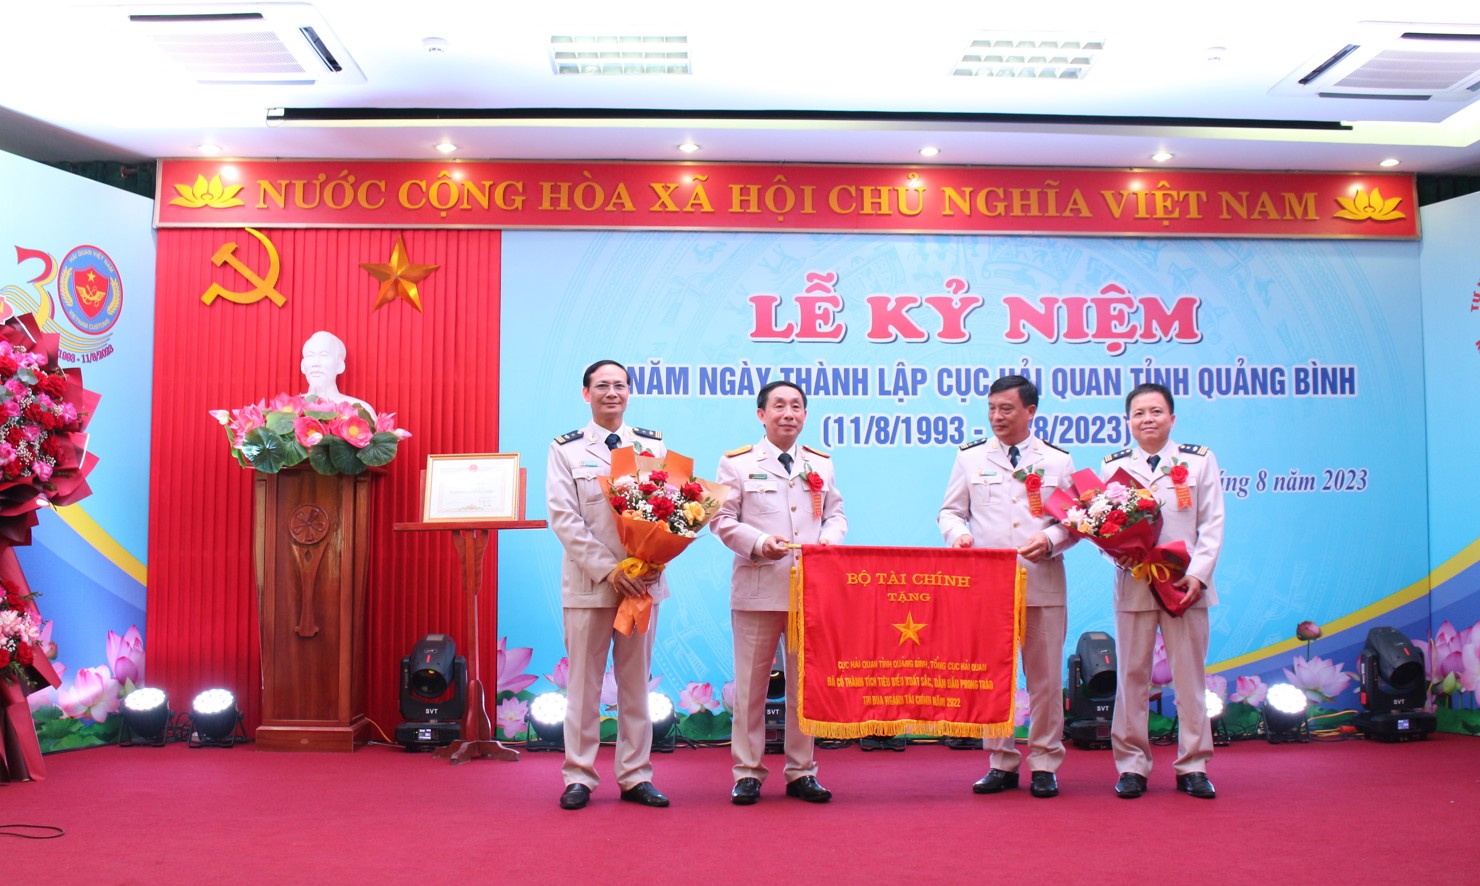 Thừa ủy quyền của Bộ trưởng Bộ Tài chính, Phó Tổng cục trưởng Tổng cục Hải quan Hoàng Việt Cường đã trao tặng Cờ thi đua của Bộ trưởng Bộ Tài chính cho Cục Hải quan Quảng Bình.